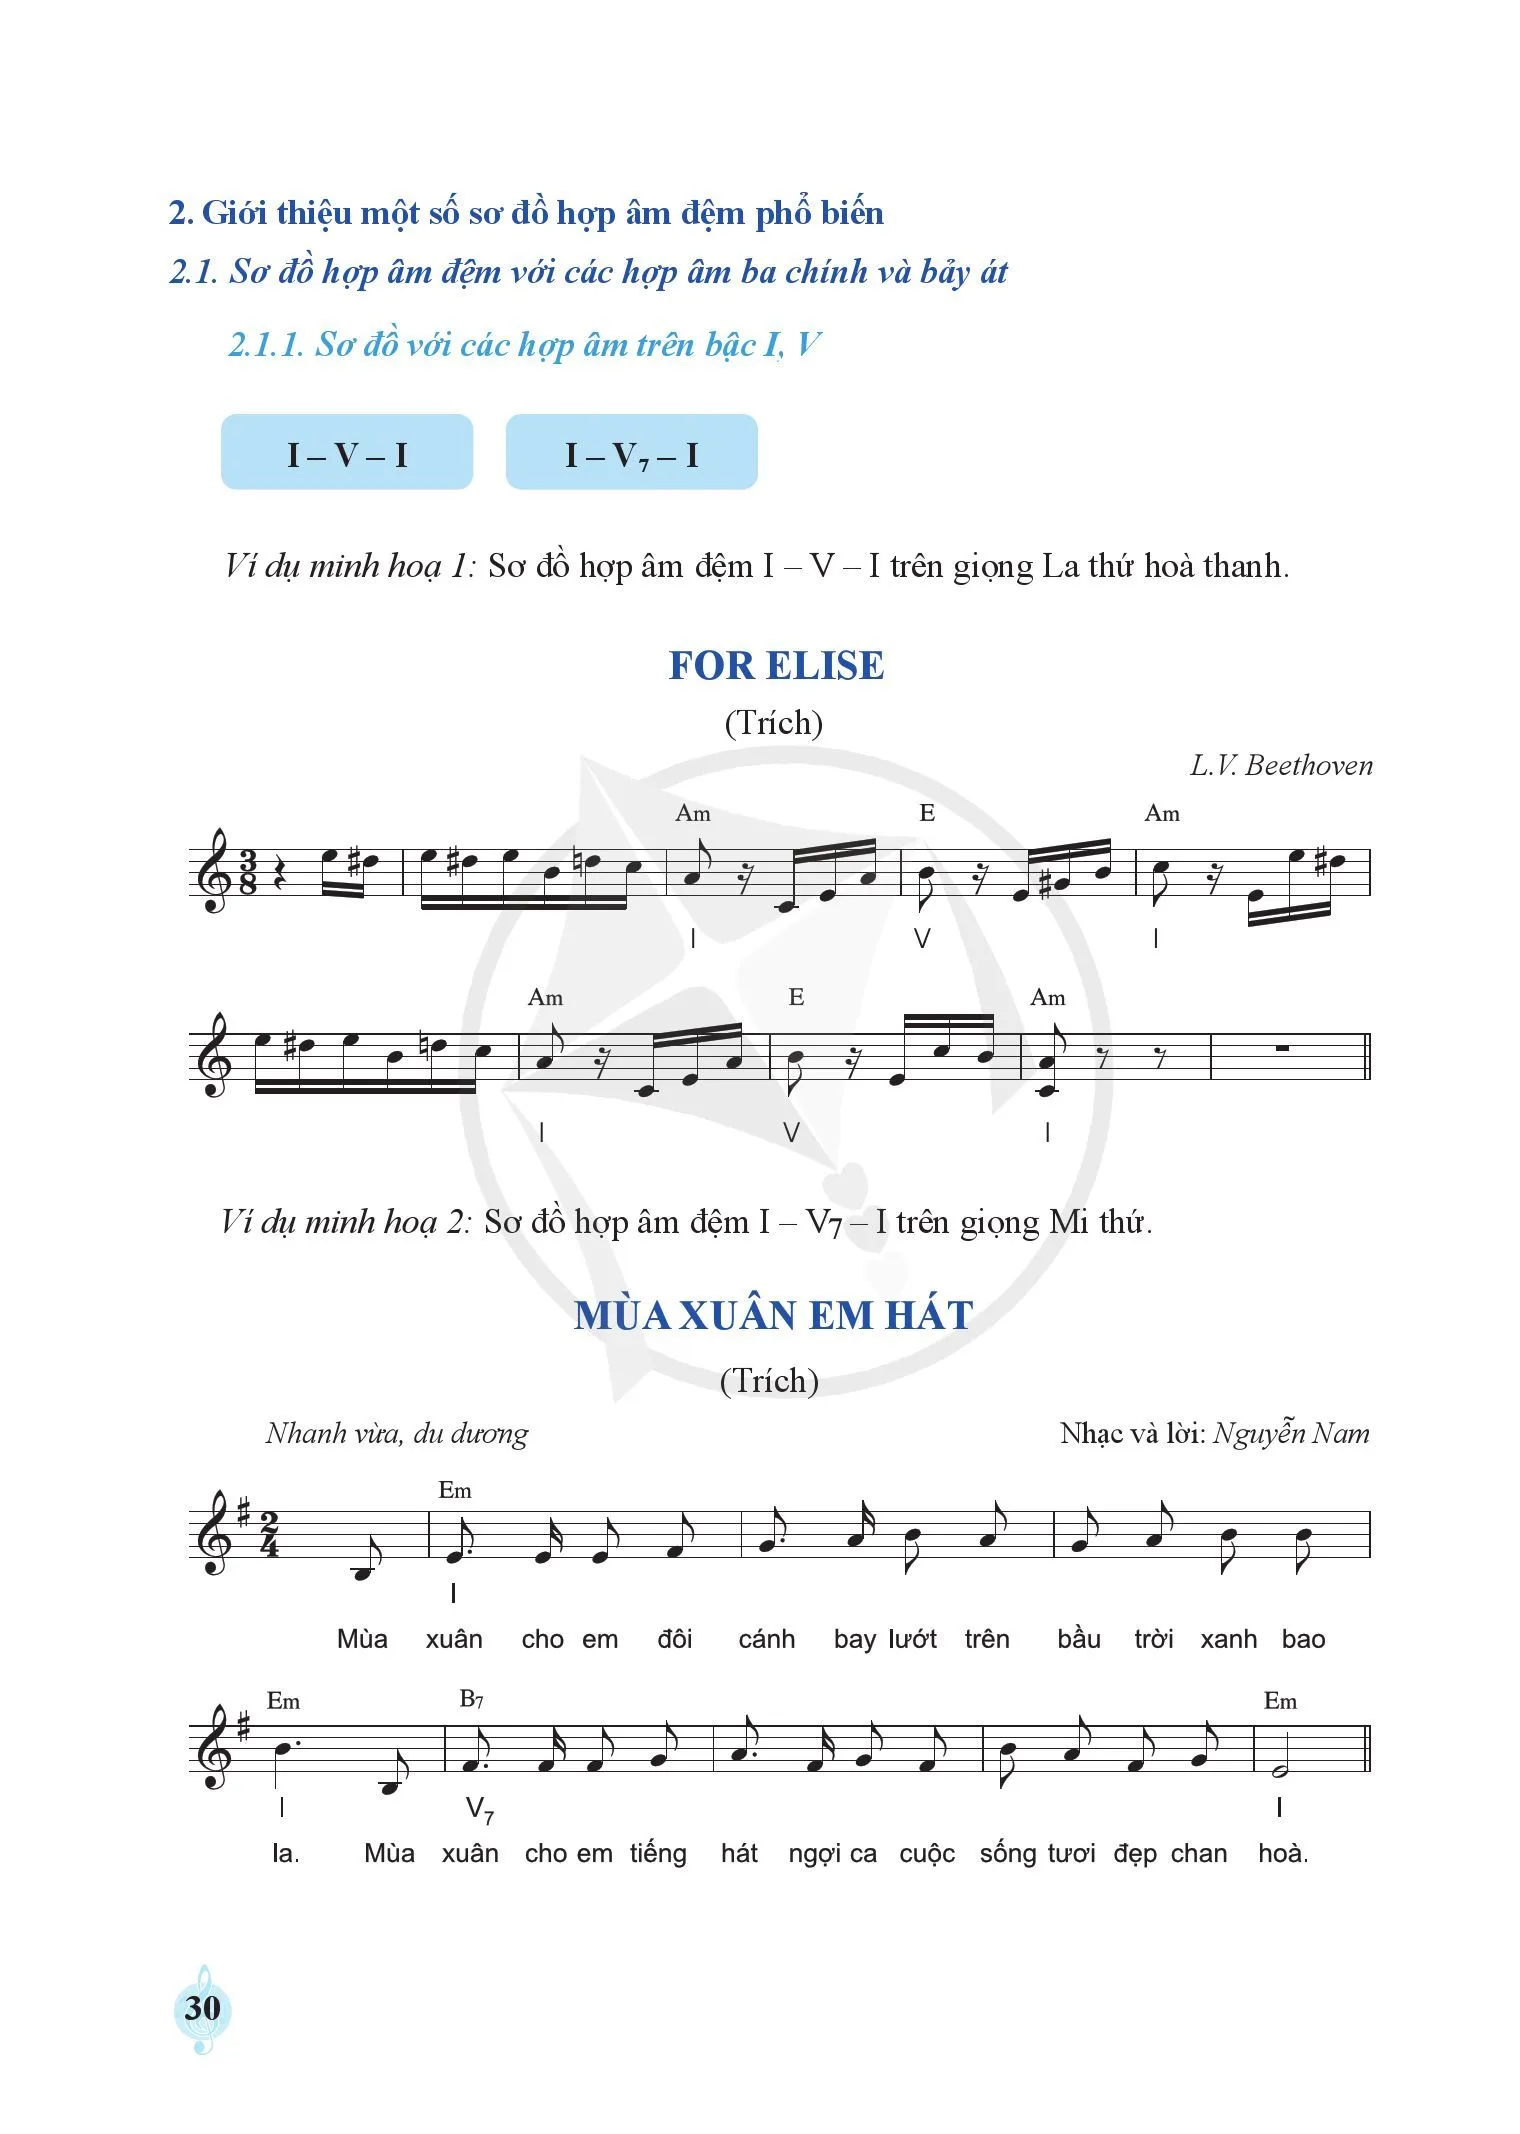 Bài 3: Thực hành trên đàn một số sơ đồ hợp âm đệm cho ca khúc và bản nhạc